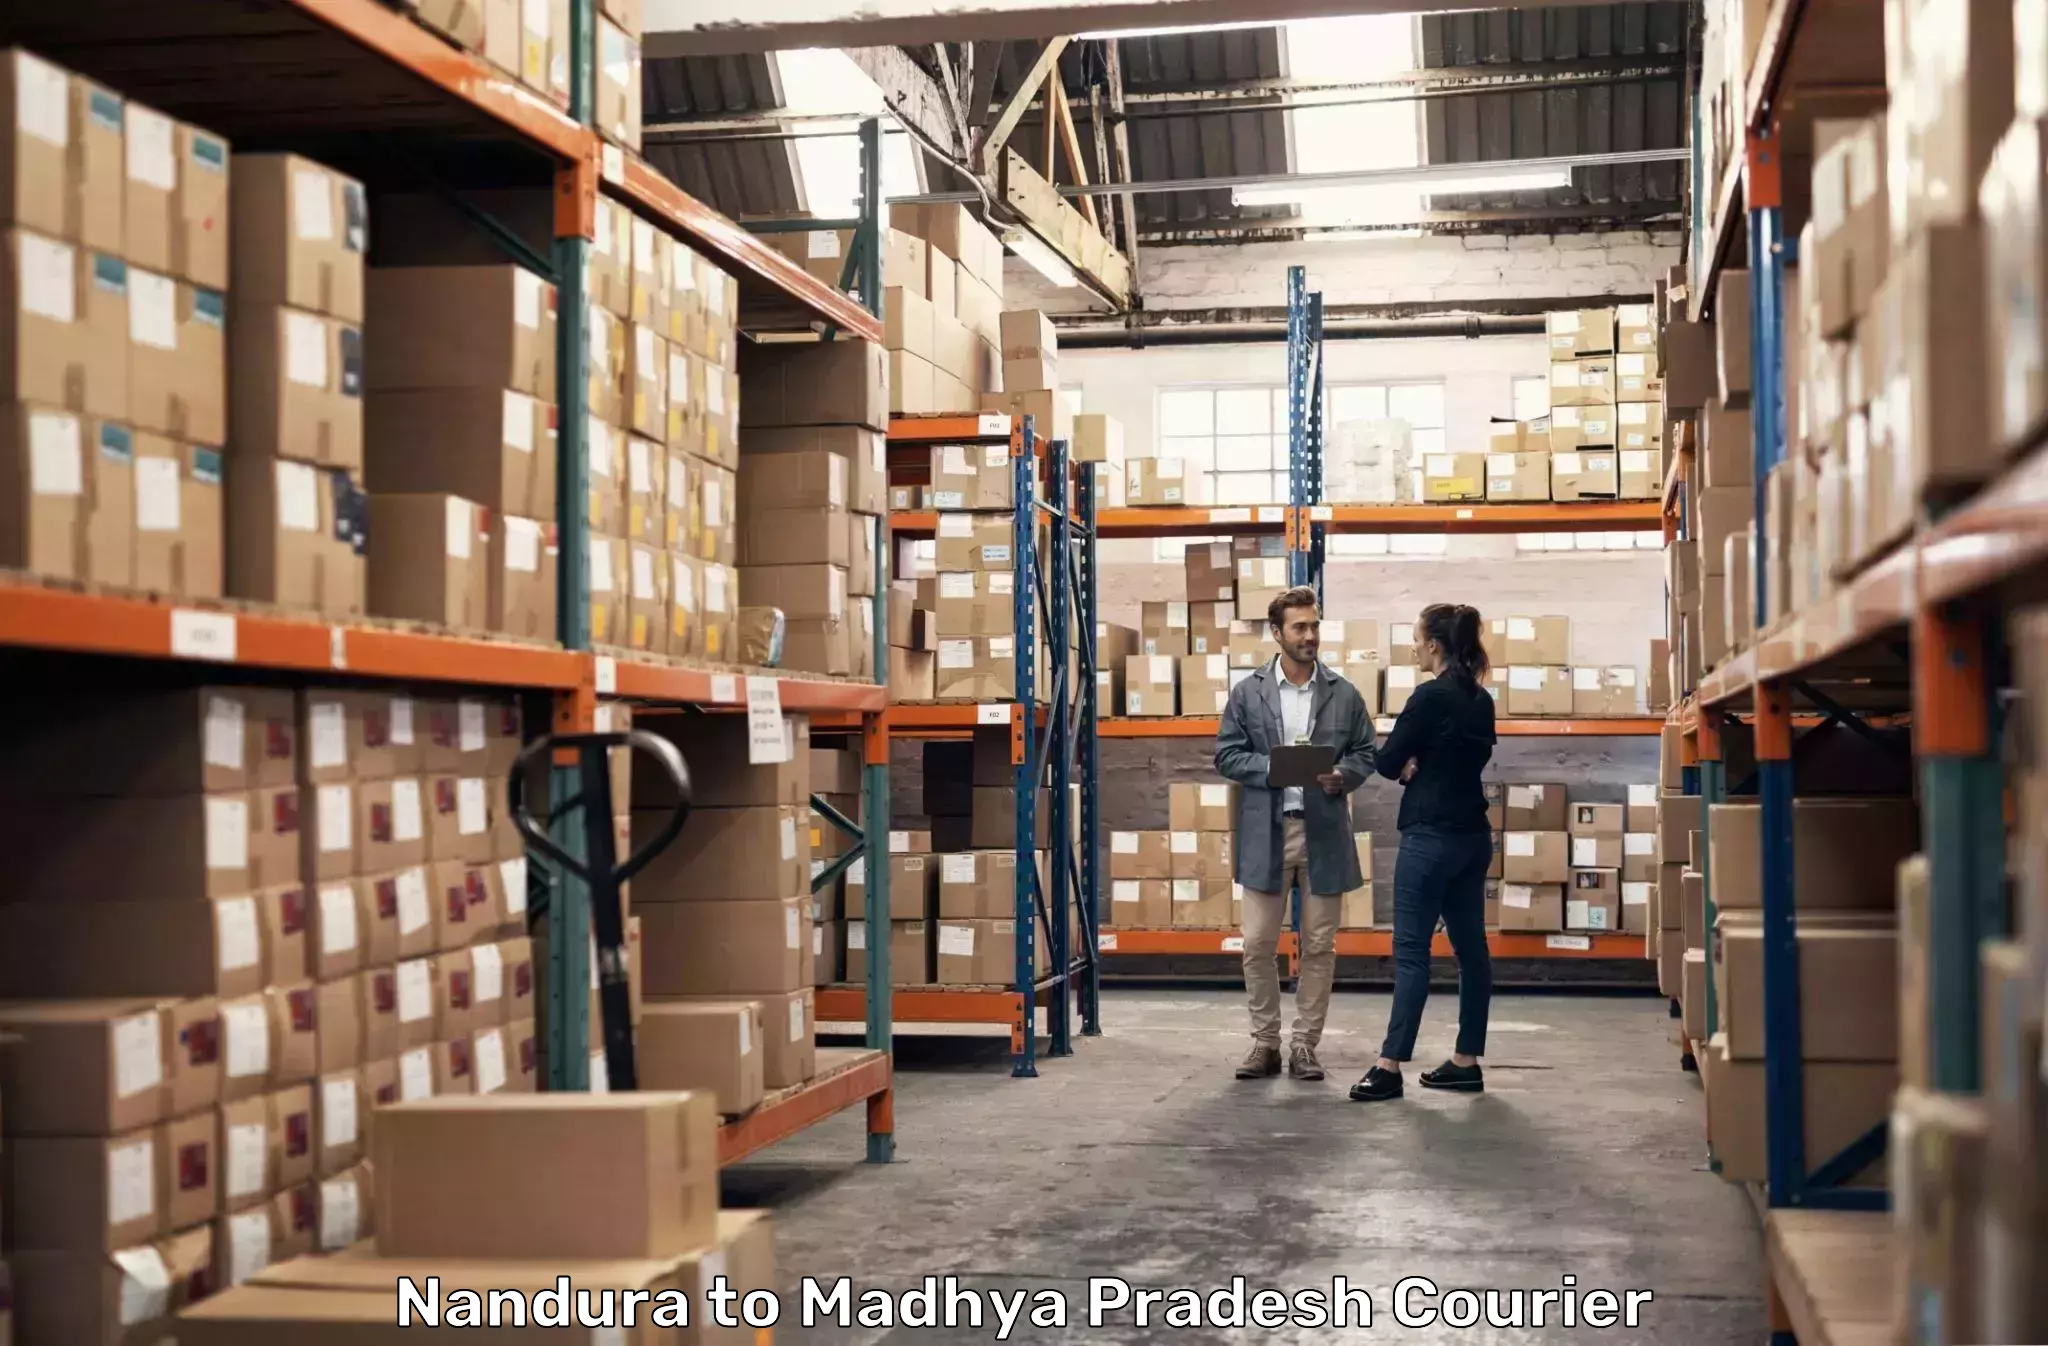 Smart courier technologies in Nandura to Niwari